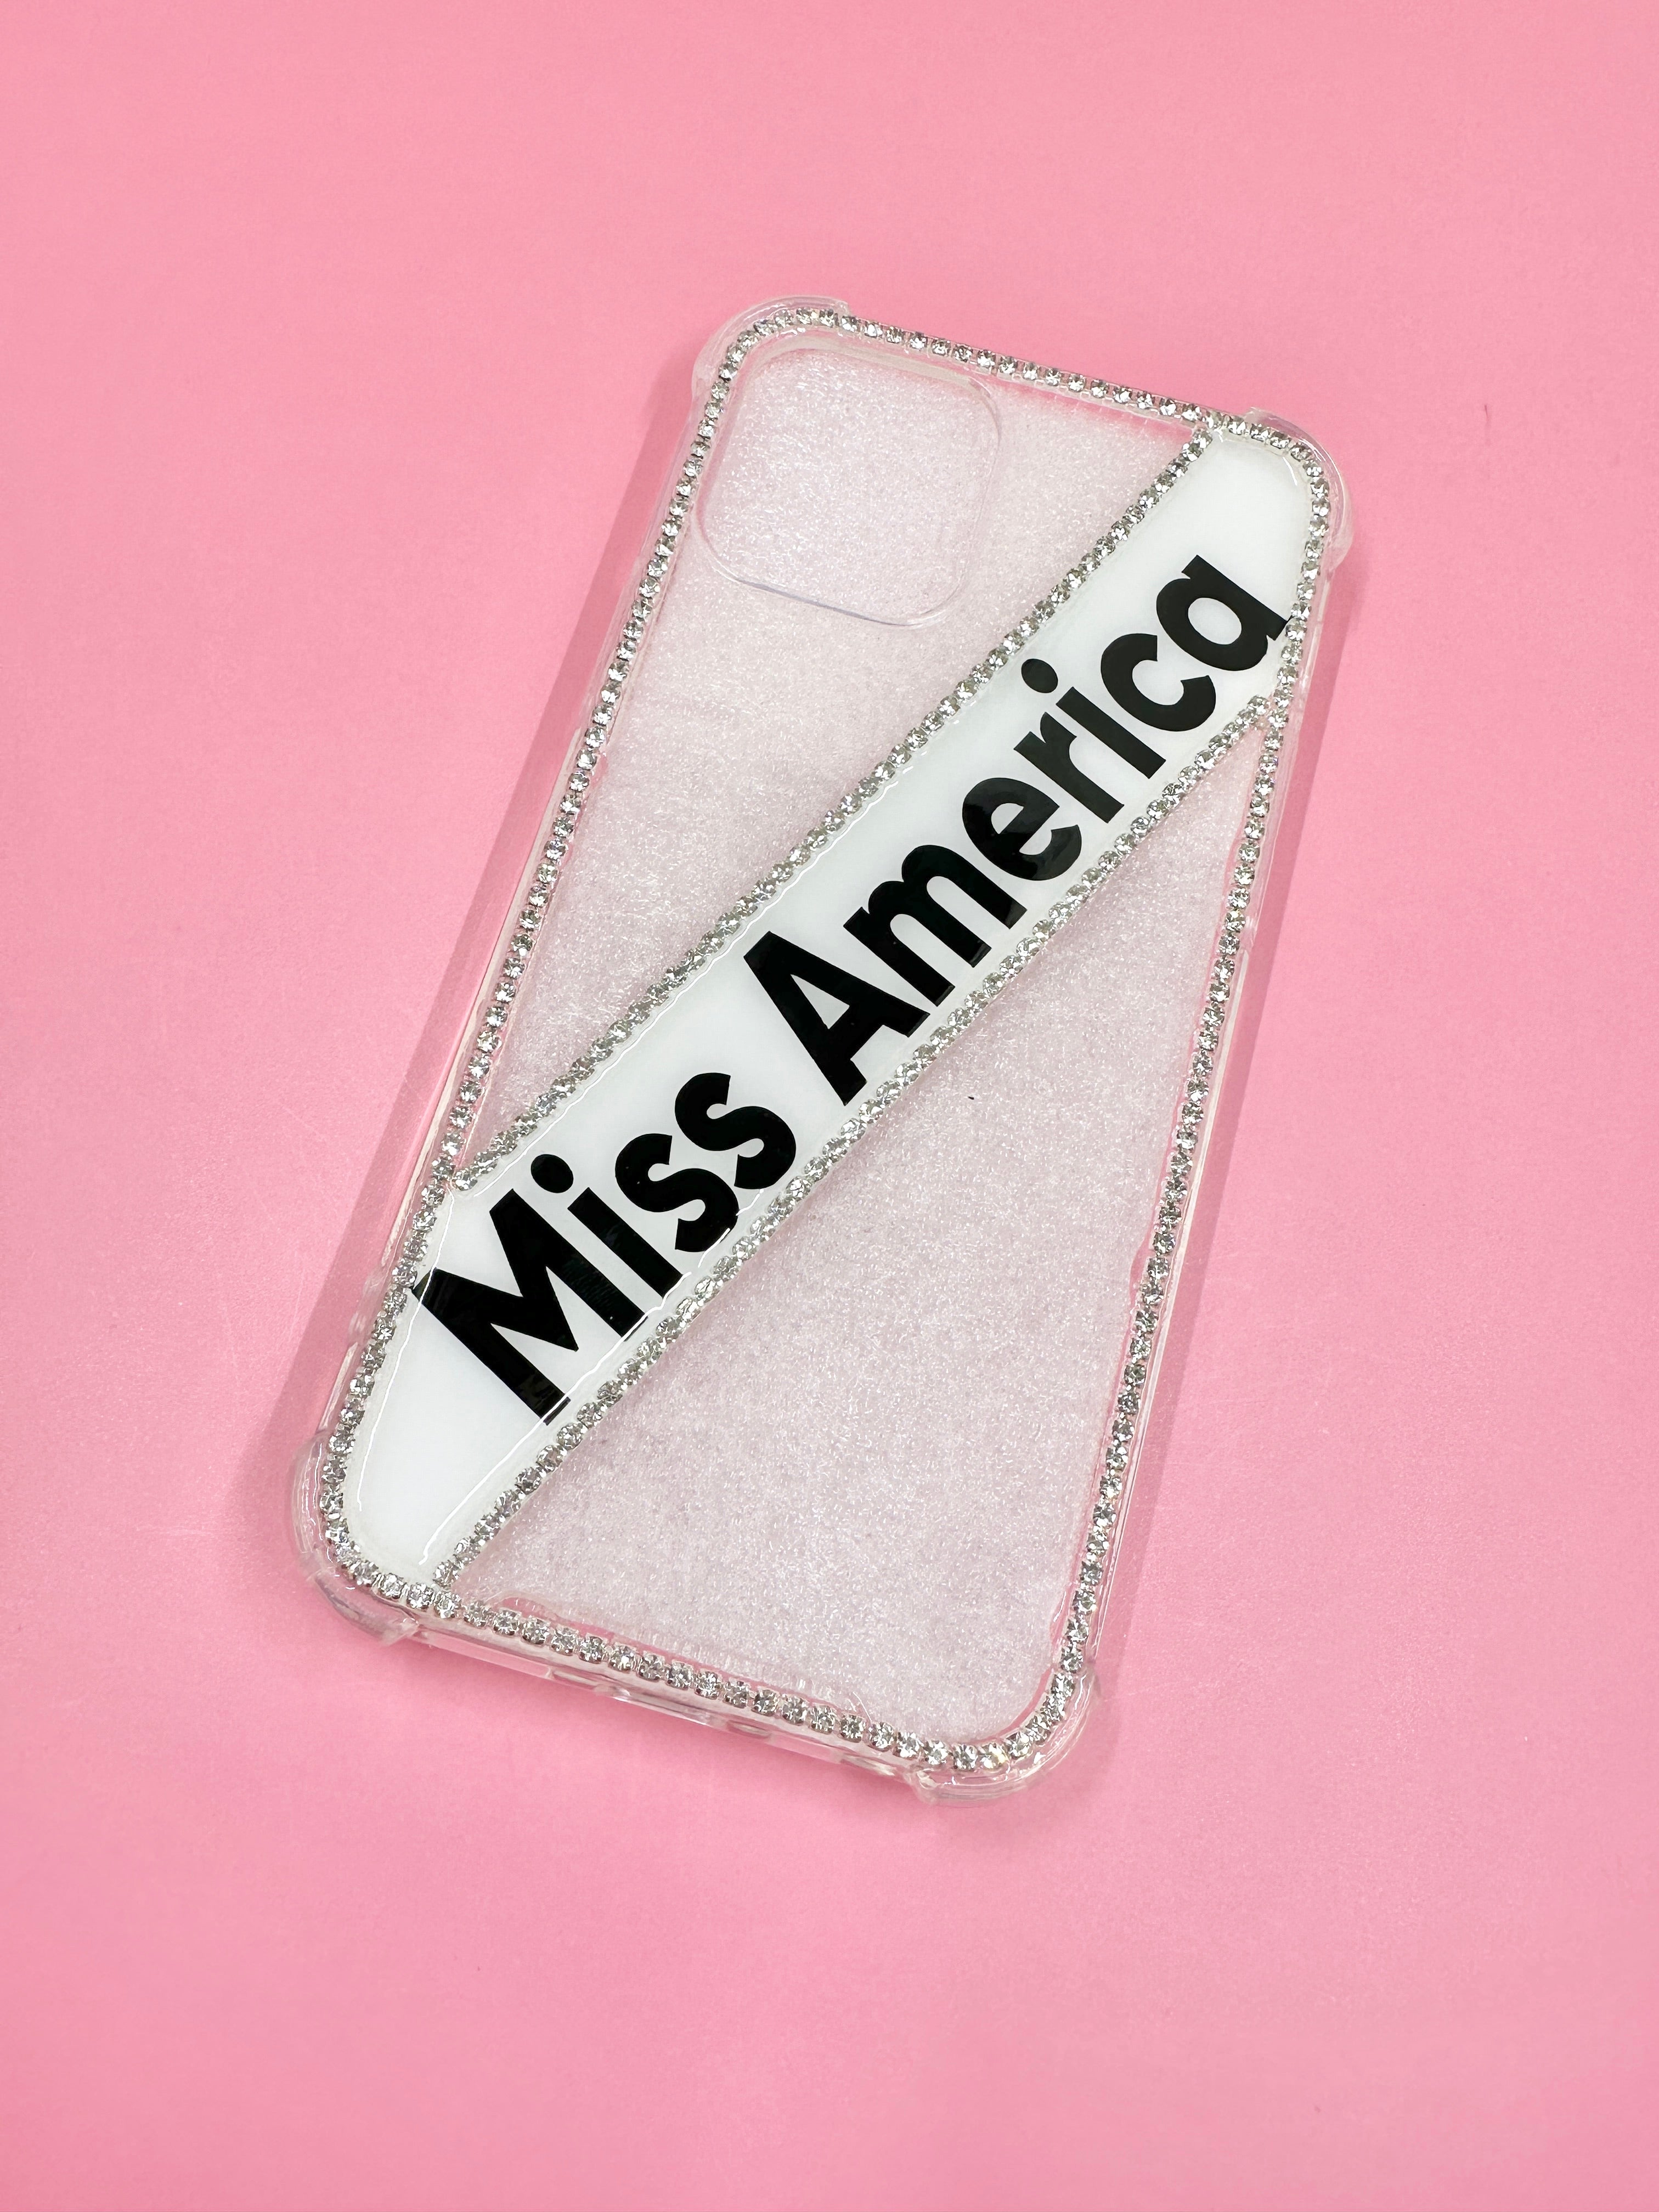 Miss America Title Phone Case